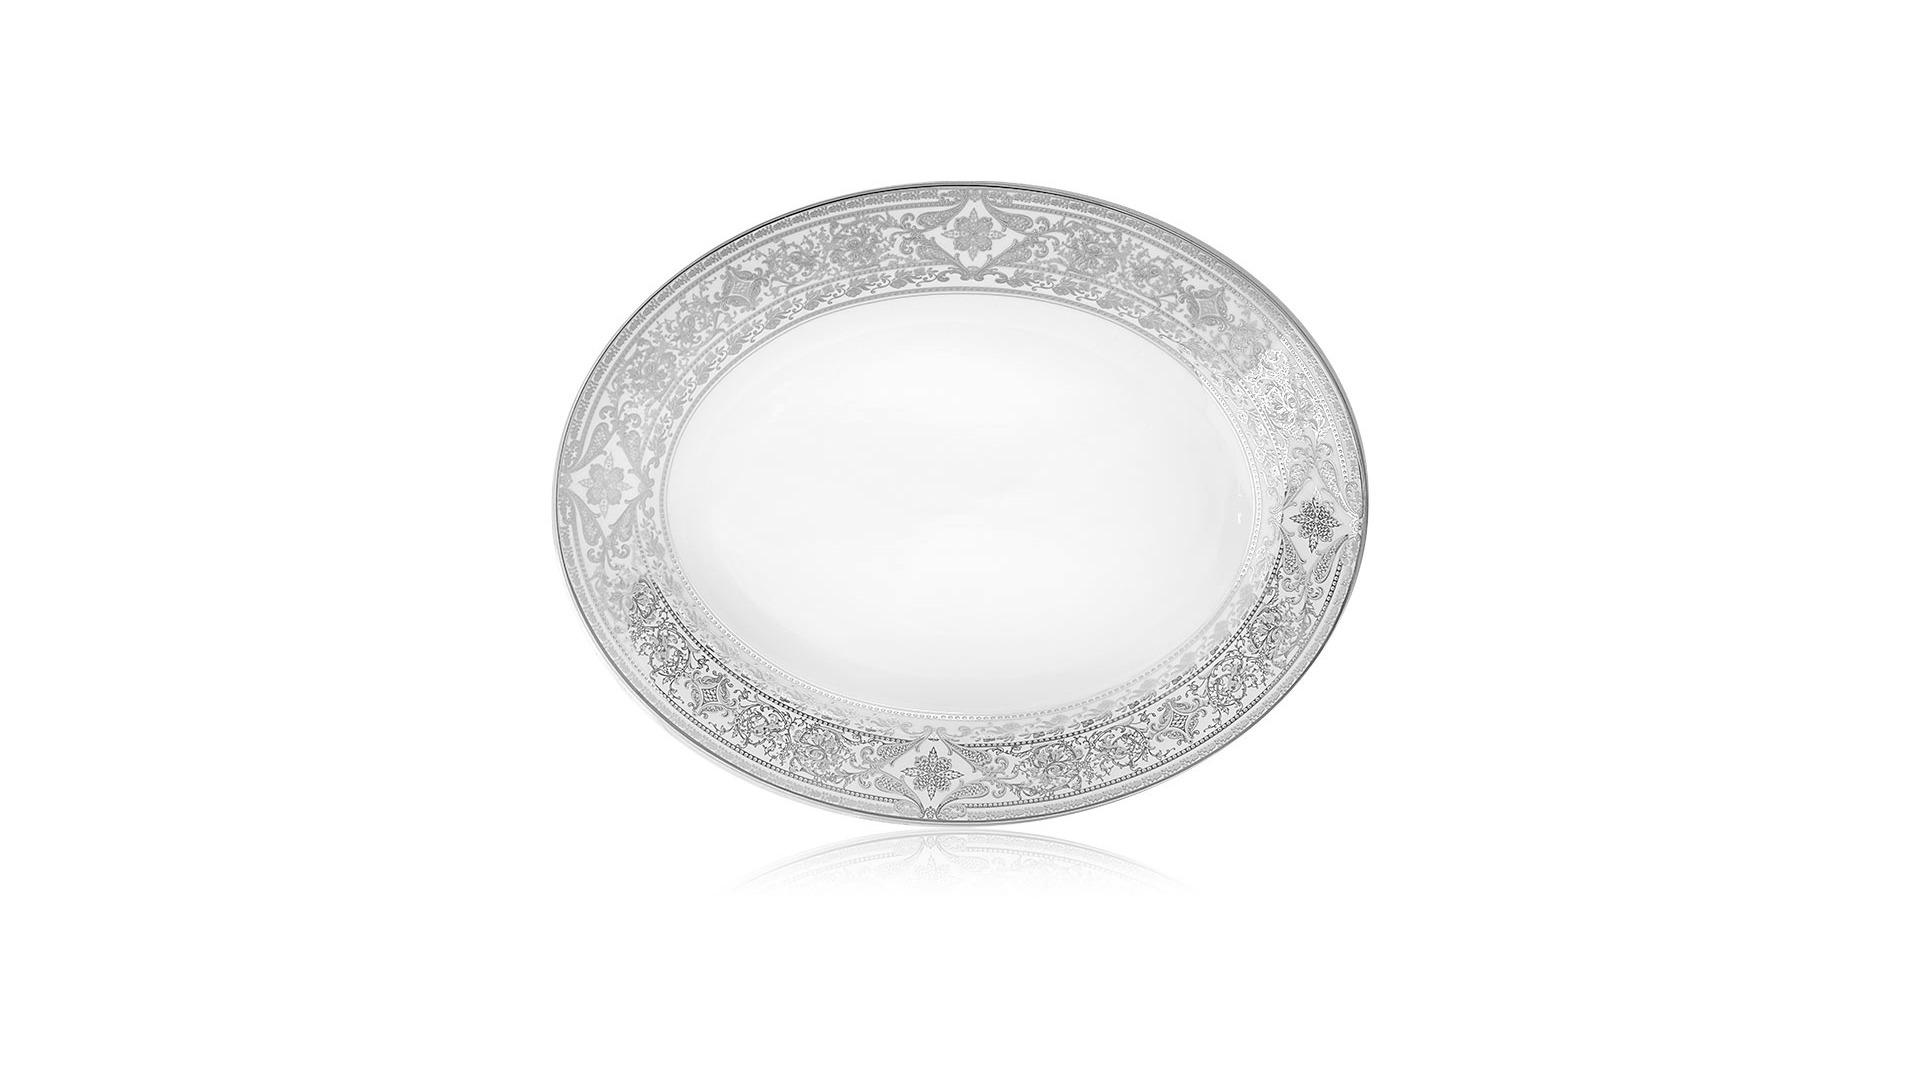 Сервиз столовый Матиньон,  на 6 персон 45 предметов, белый, платиновый декор